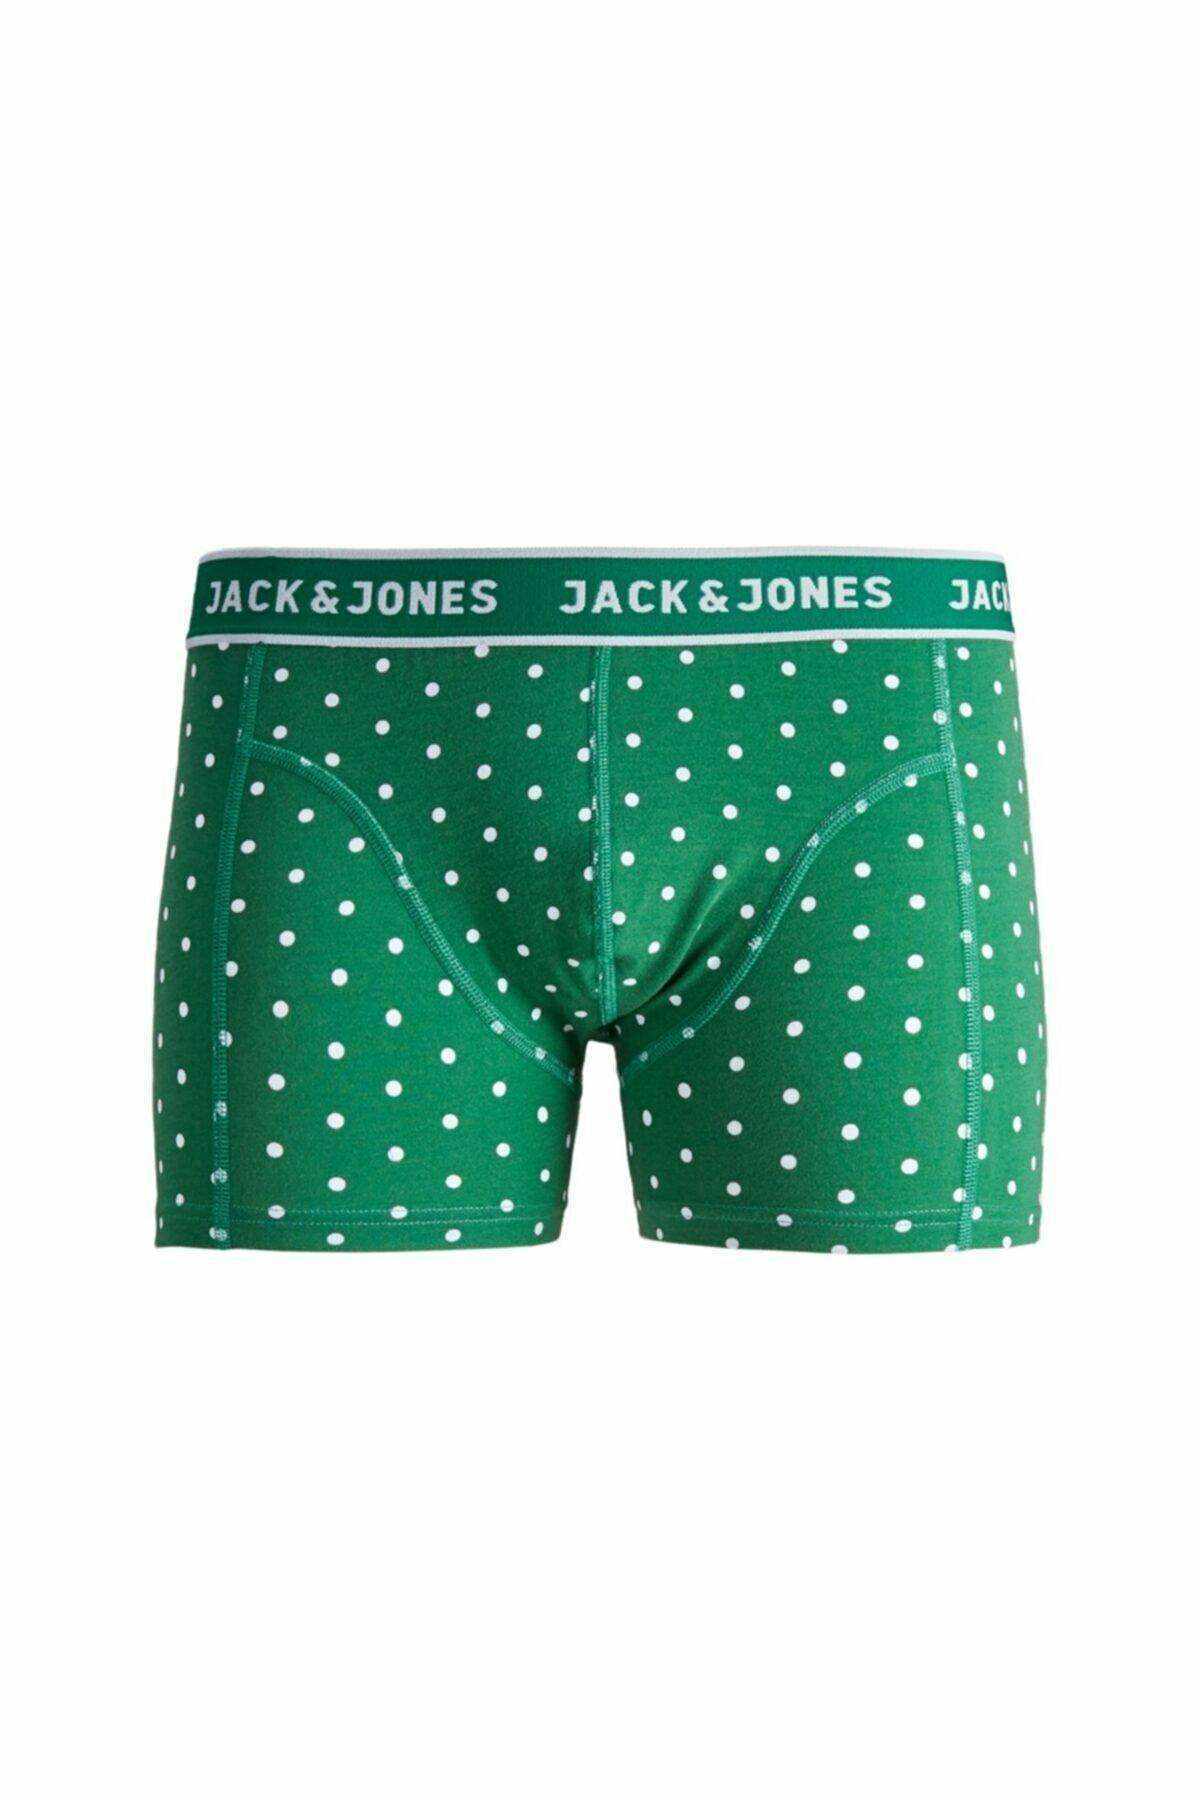 Jack&Jones Erkek Boxer  - Yeşil